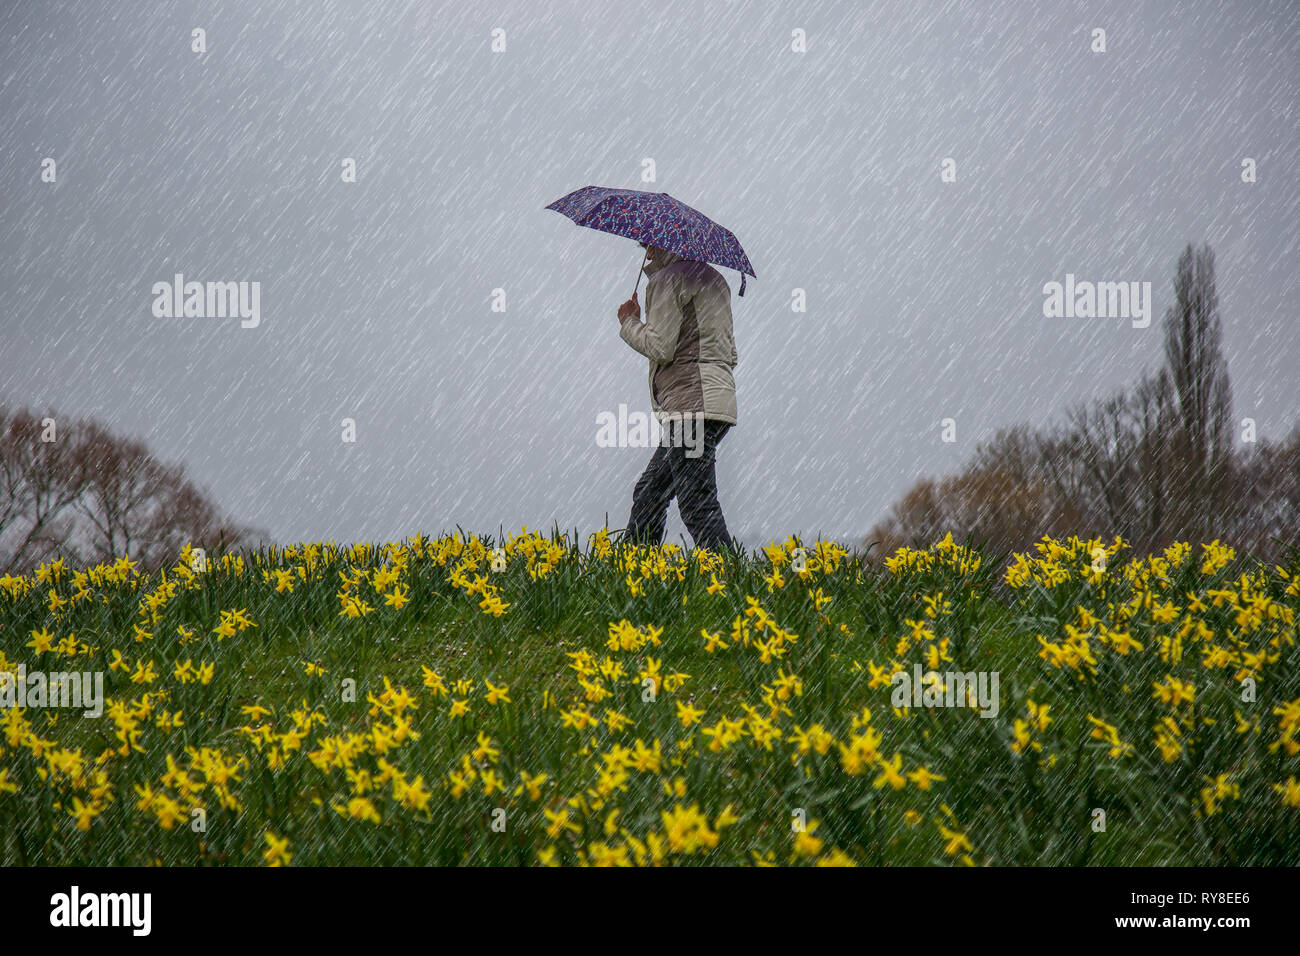 Vue latérale d'une femelle isolée, en manteau, marchant par des jonquilles jaunes sur une colline dans un parc de campagne britannique, en versant la pluie, tenant un parapluie. Banque D'Images